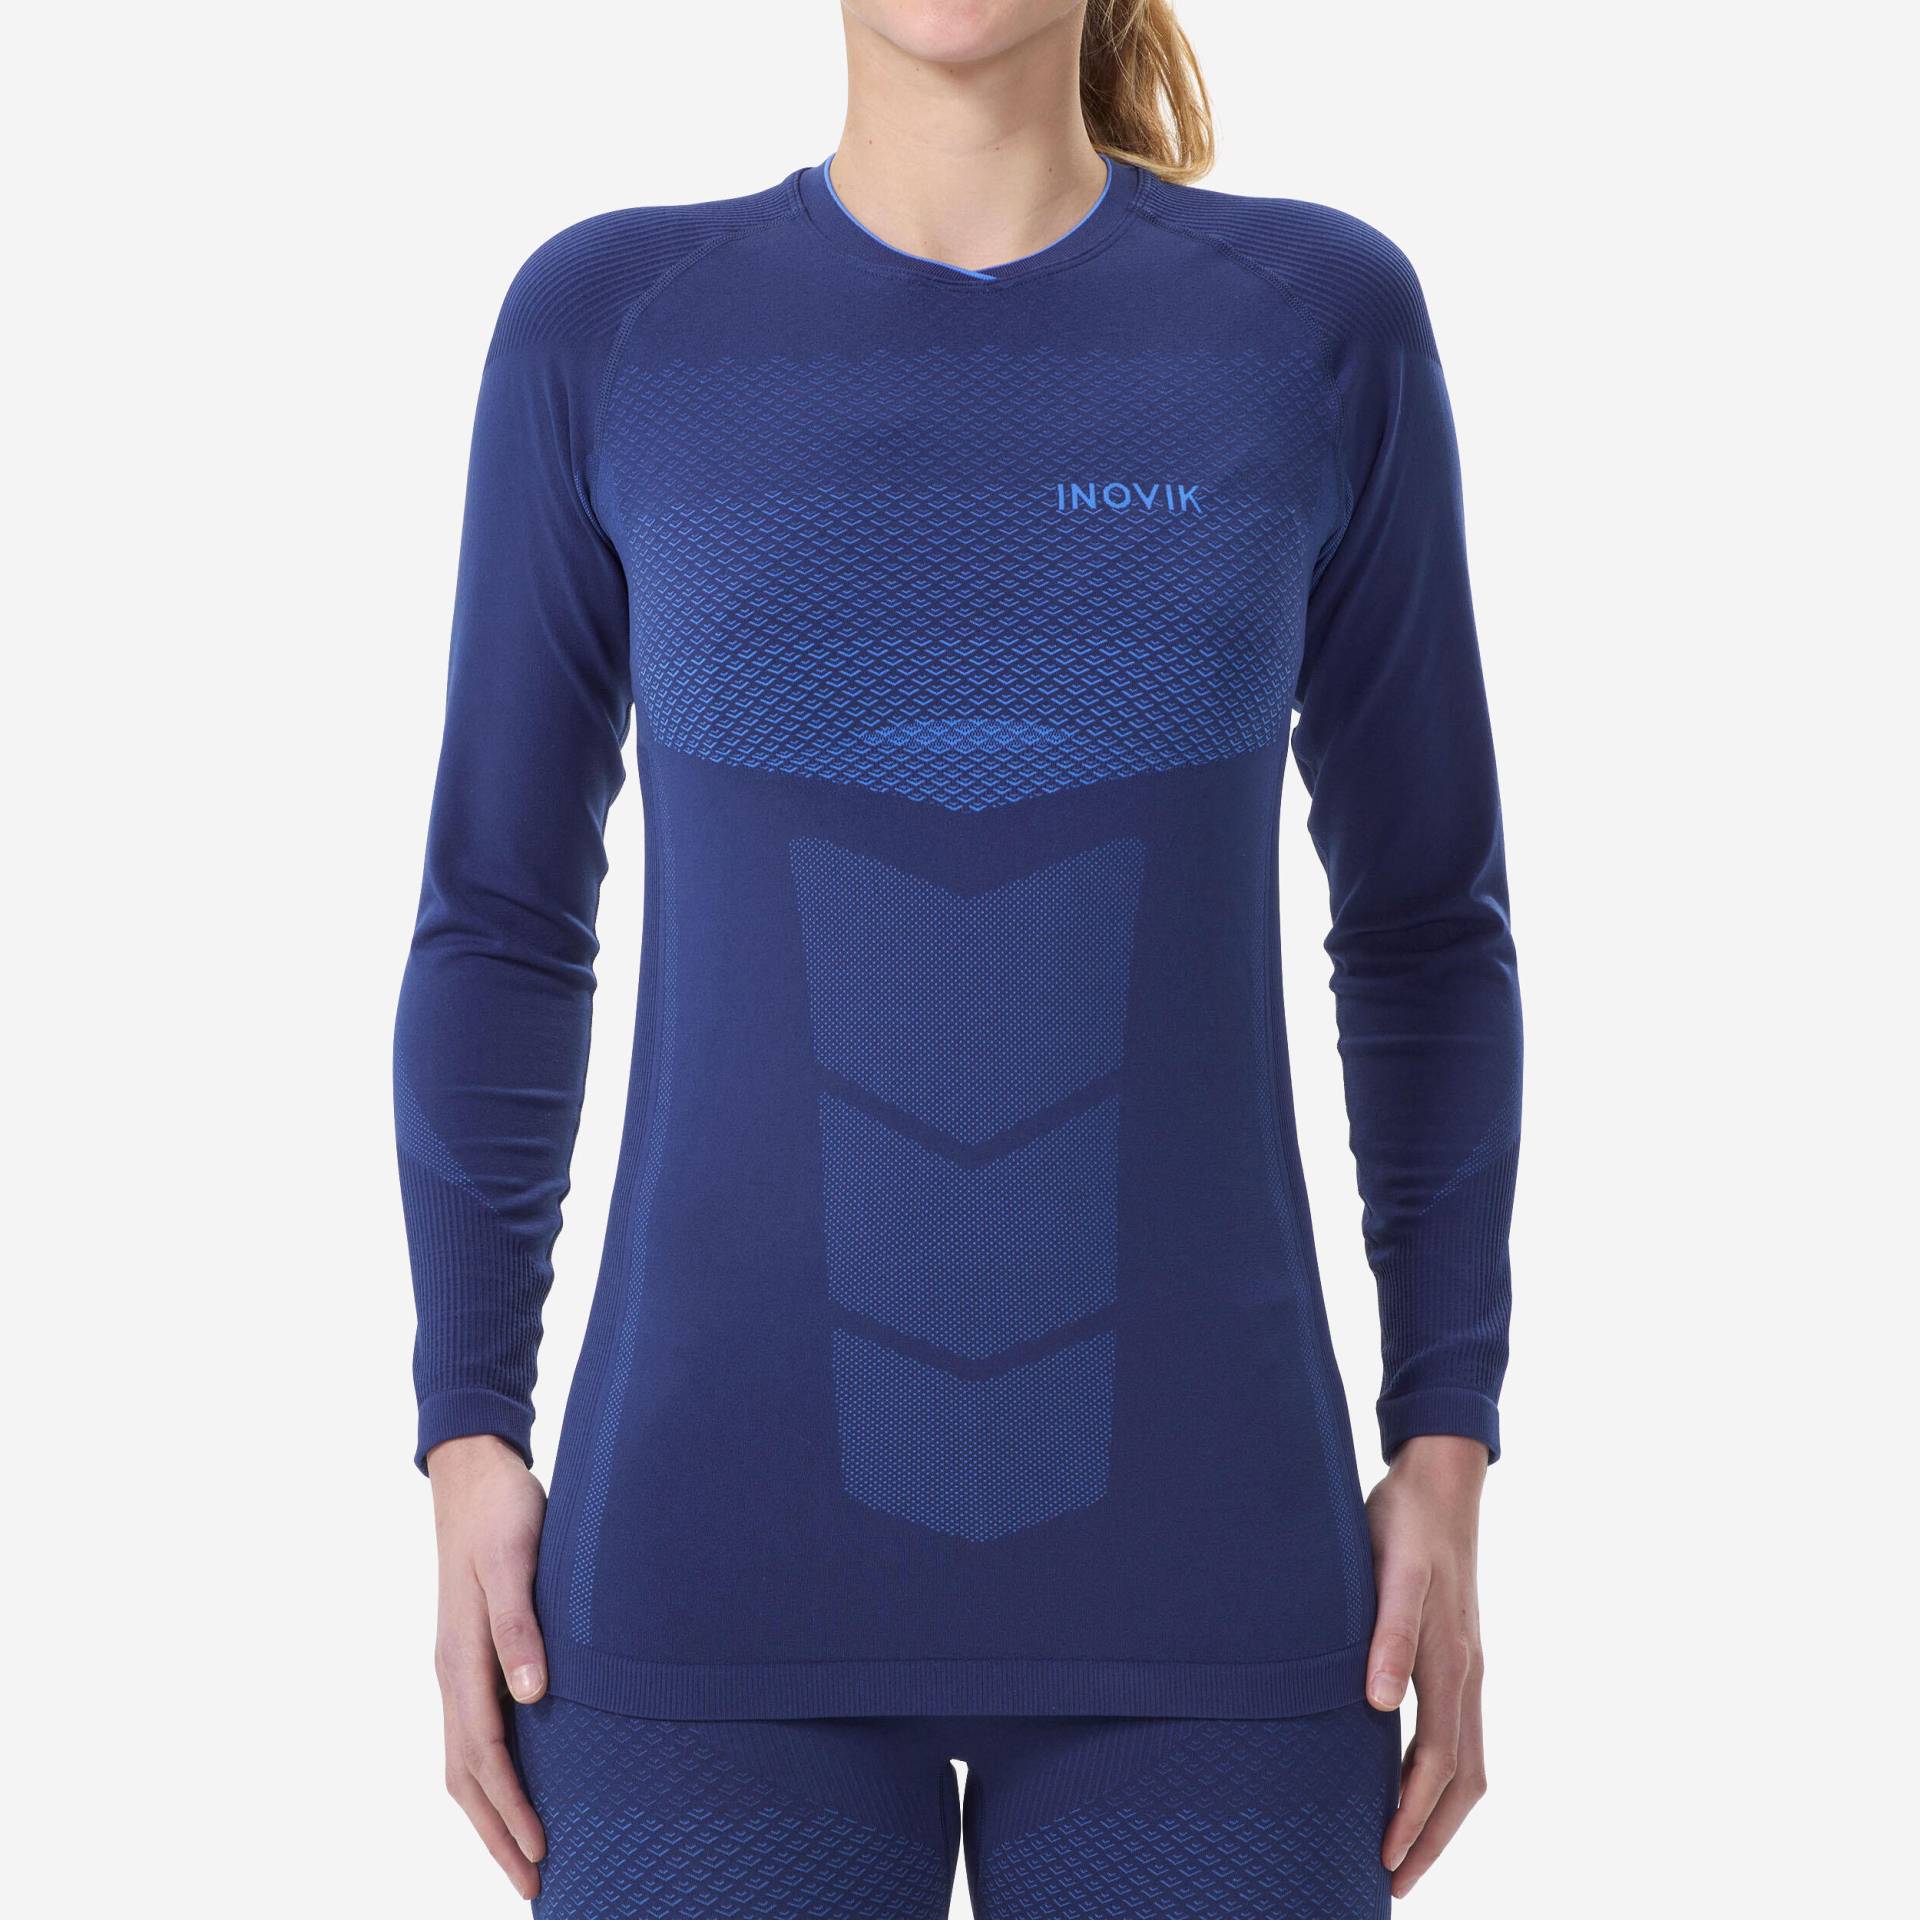 Langlaufunterwäsche Damen wärmend - 900 blau von INOVIK